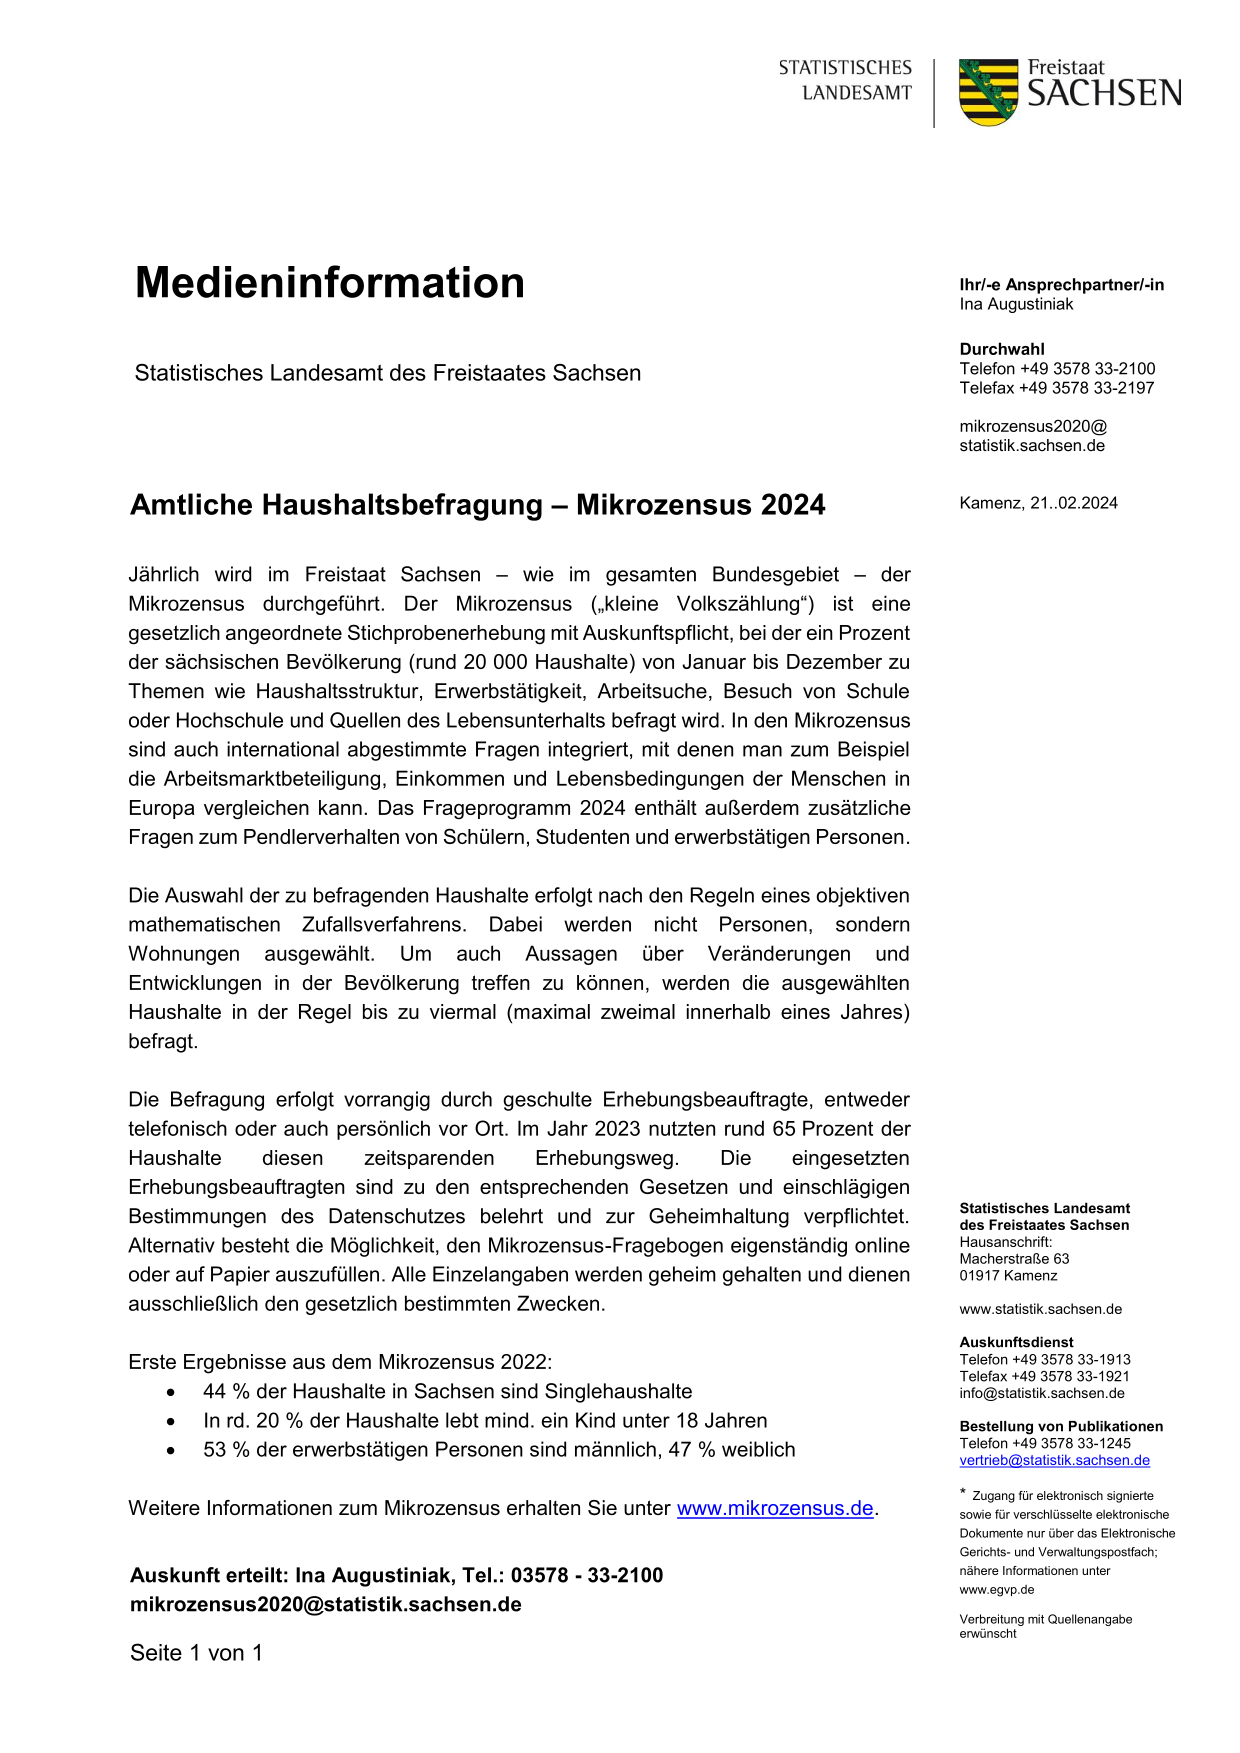 Medieninformation Mikrozensus 2024